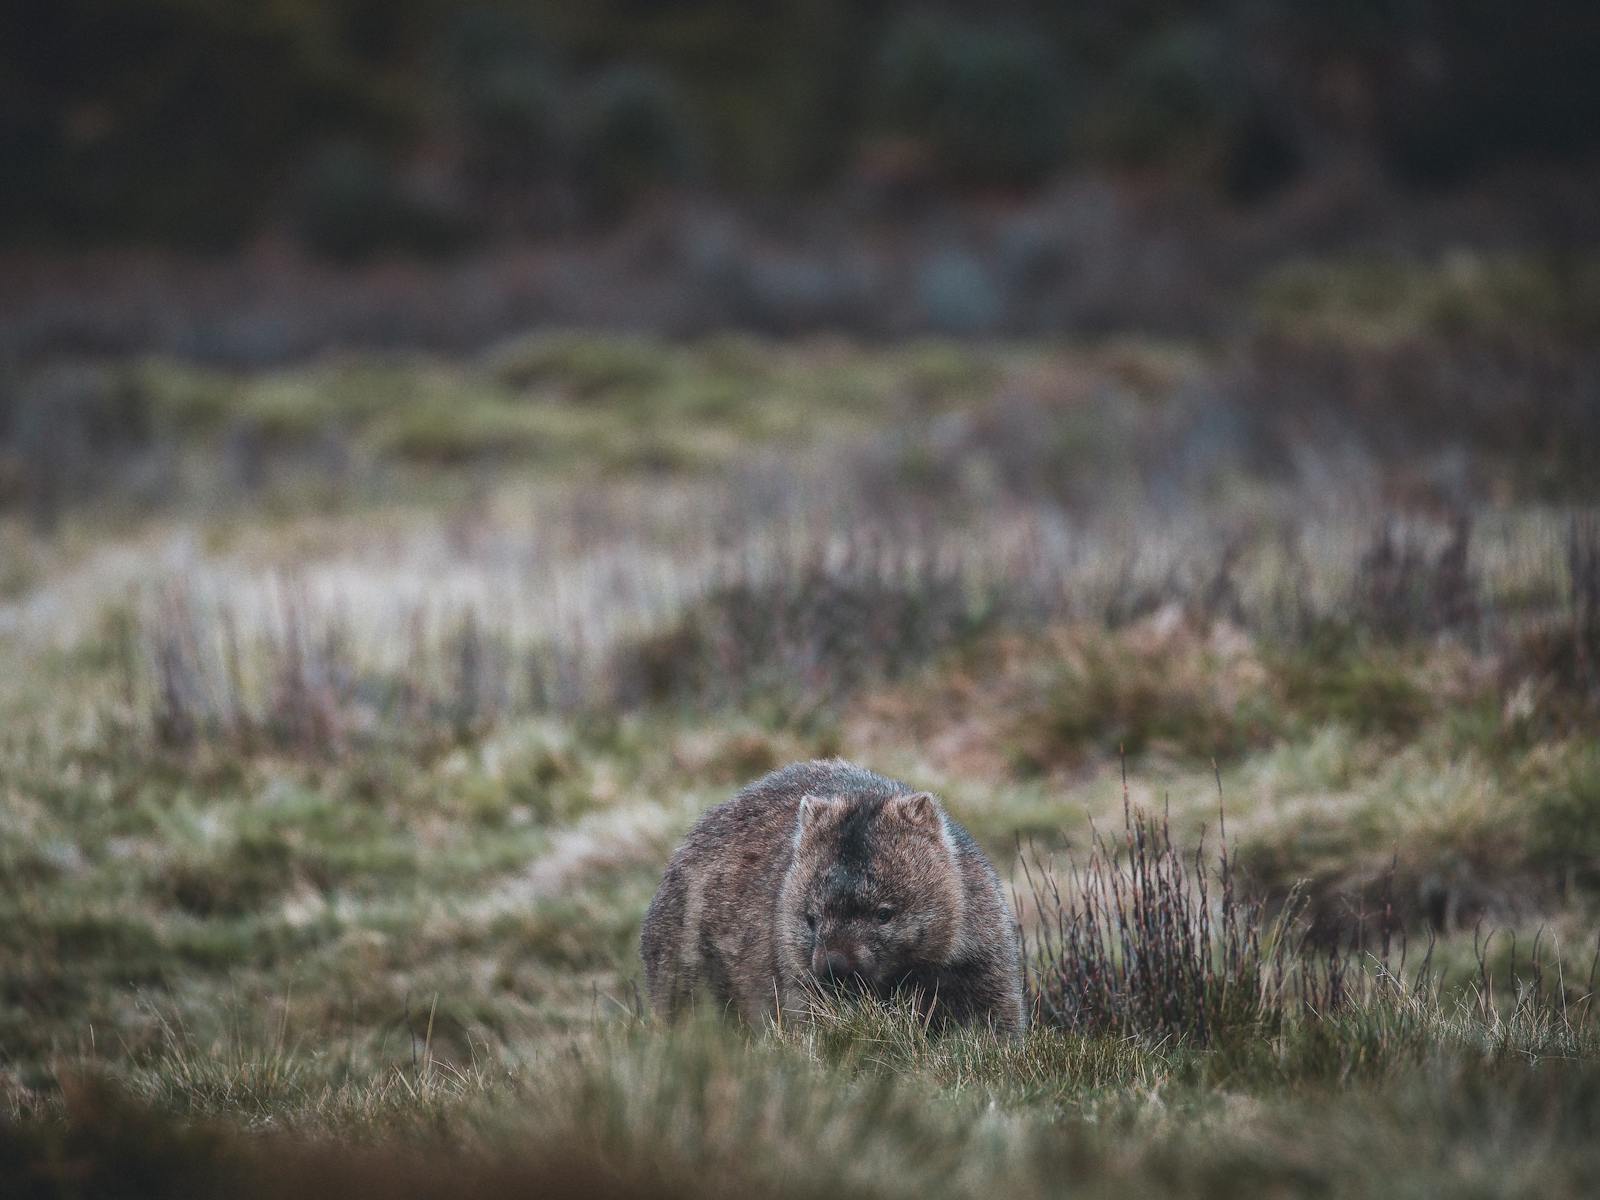 Wombat in grassland